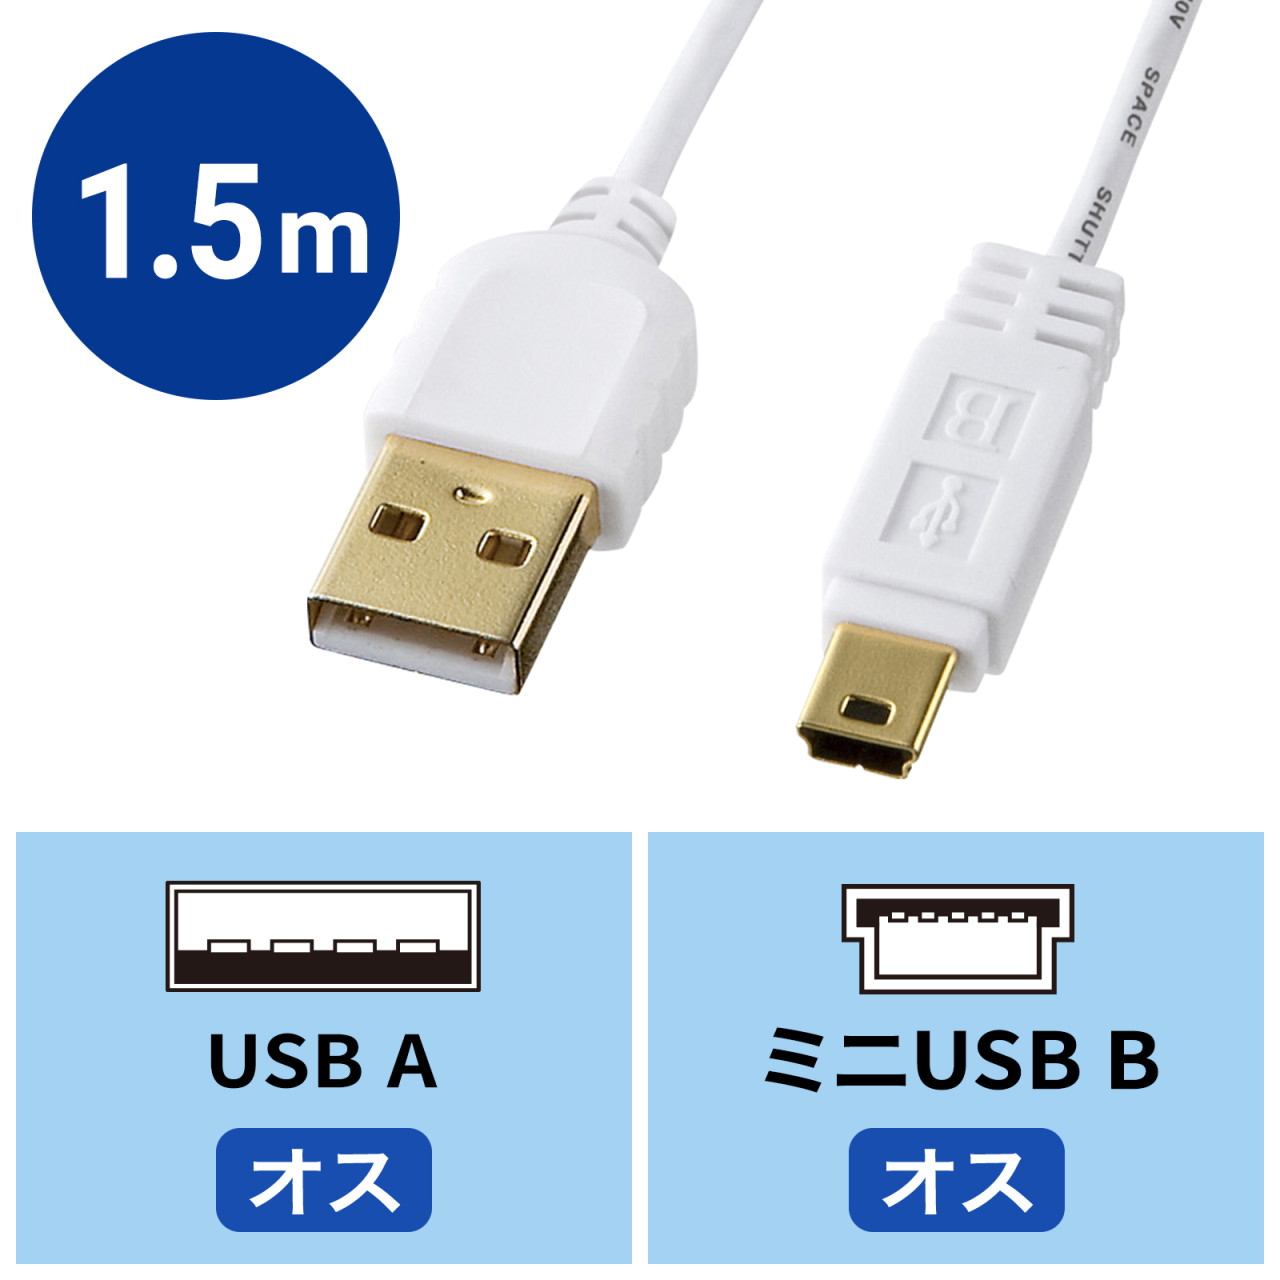 USBケーブル (タイプmini-B) 1.5m - PCケーブル・コネクタ